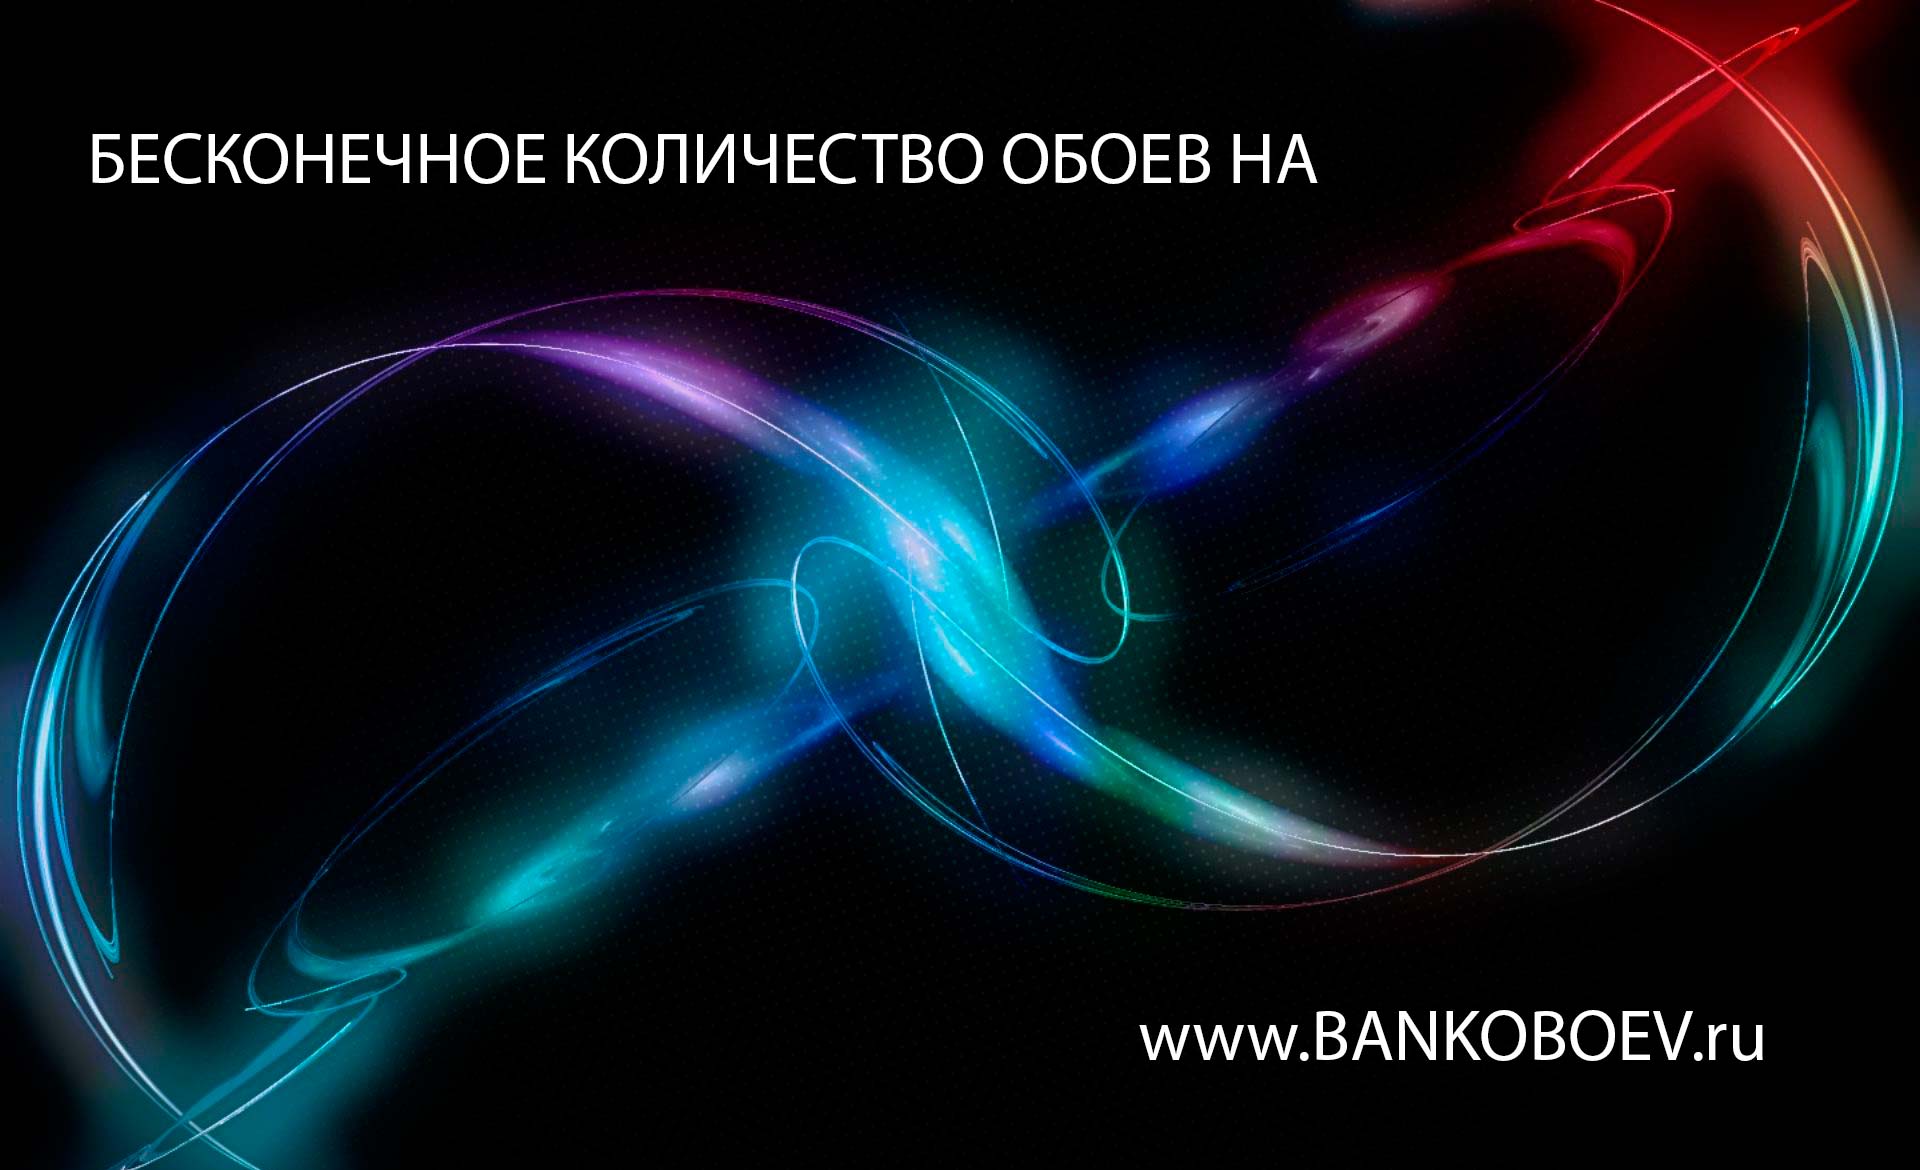 Bankoboev Ru Image Nzy1nta Jpg